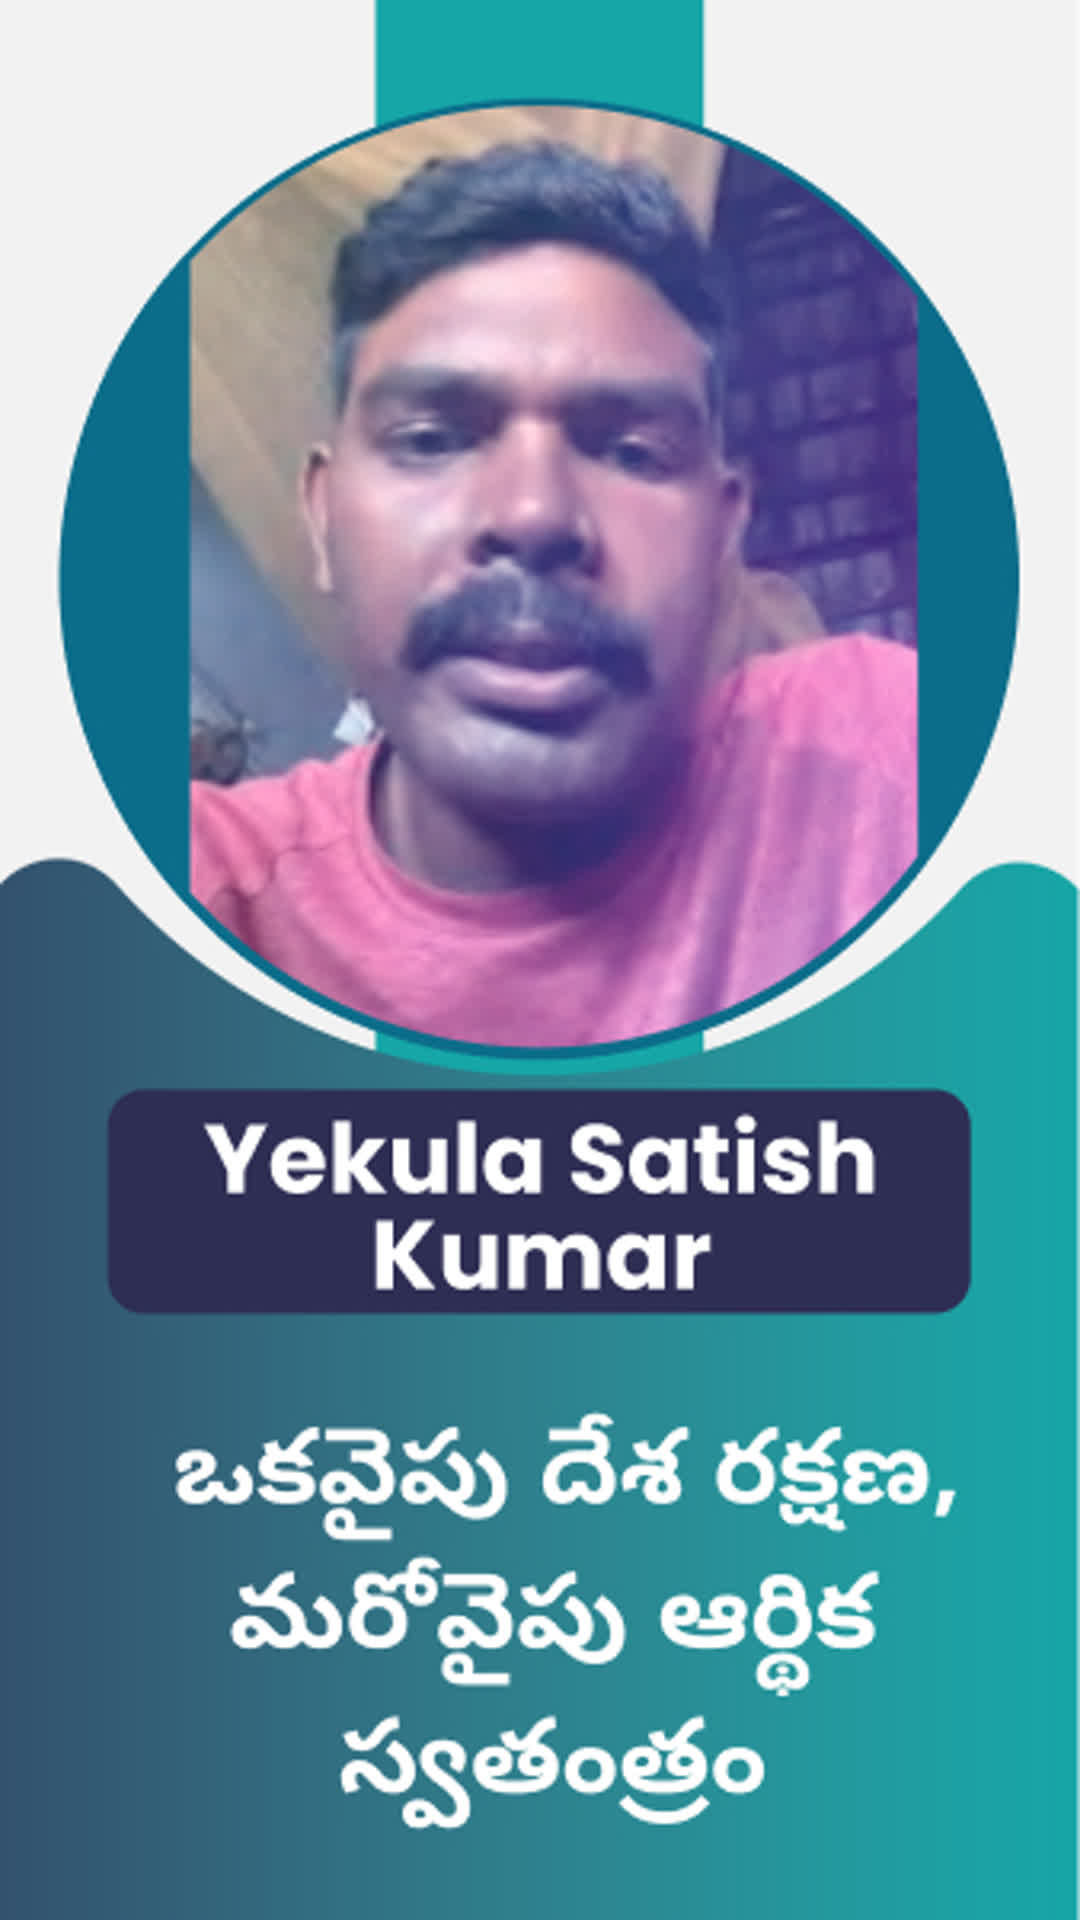 YEKULA SATHISHKUMAR's Honest Review of ffreedom app - Vizianagaram ,Telangana